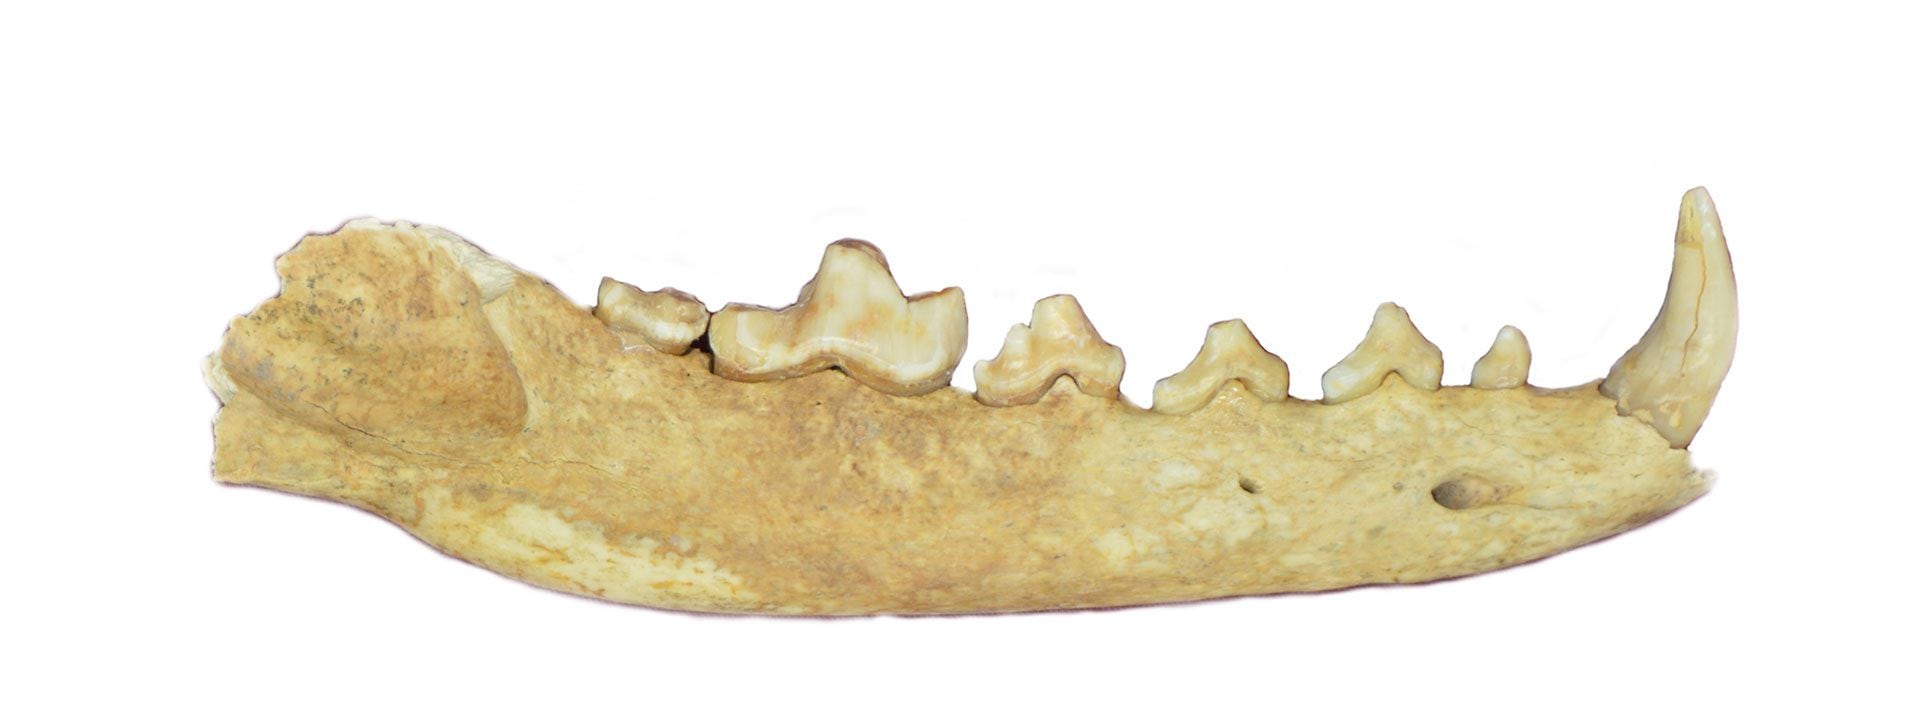 La mandíbula del ejemplar de Dusicyon avus que se investigó en Cañada Seca-1. Los investigadores hicieron análisis genéticos y revelaron que el zorro no sufrió hibridación con perros domésticos/
Francisco Prevosti (Conicet)